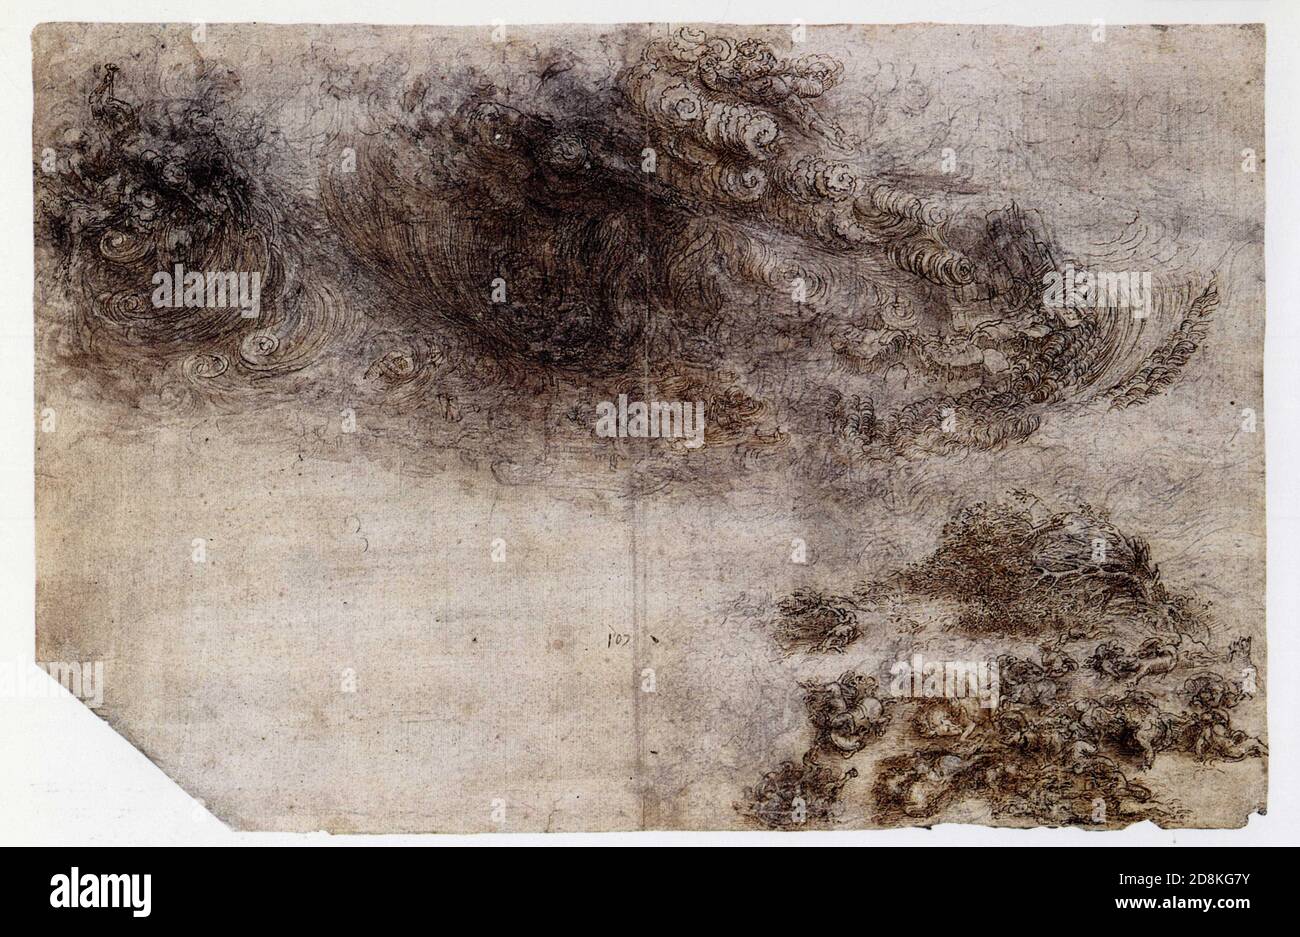 Leonardo da Vinci. Hurrikan über Reiter und Bäume. 1518. Stift und Tinte auf schwarzer Kreide mit Wasch- und weißen Spuren auf grauem gewaschenem Papier Stockfoto